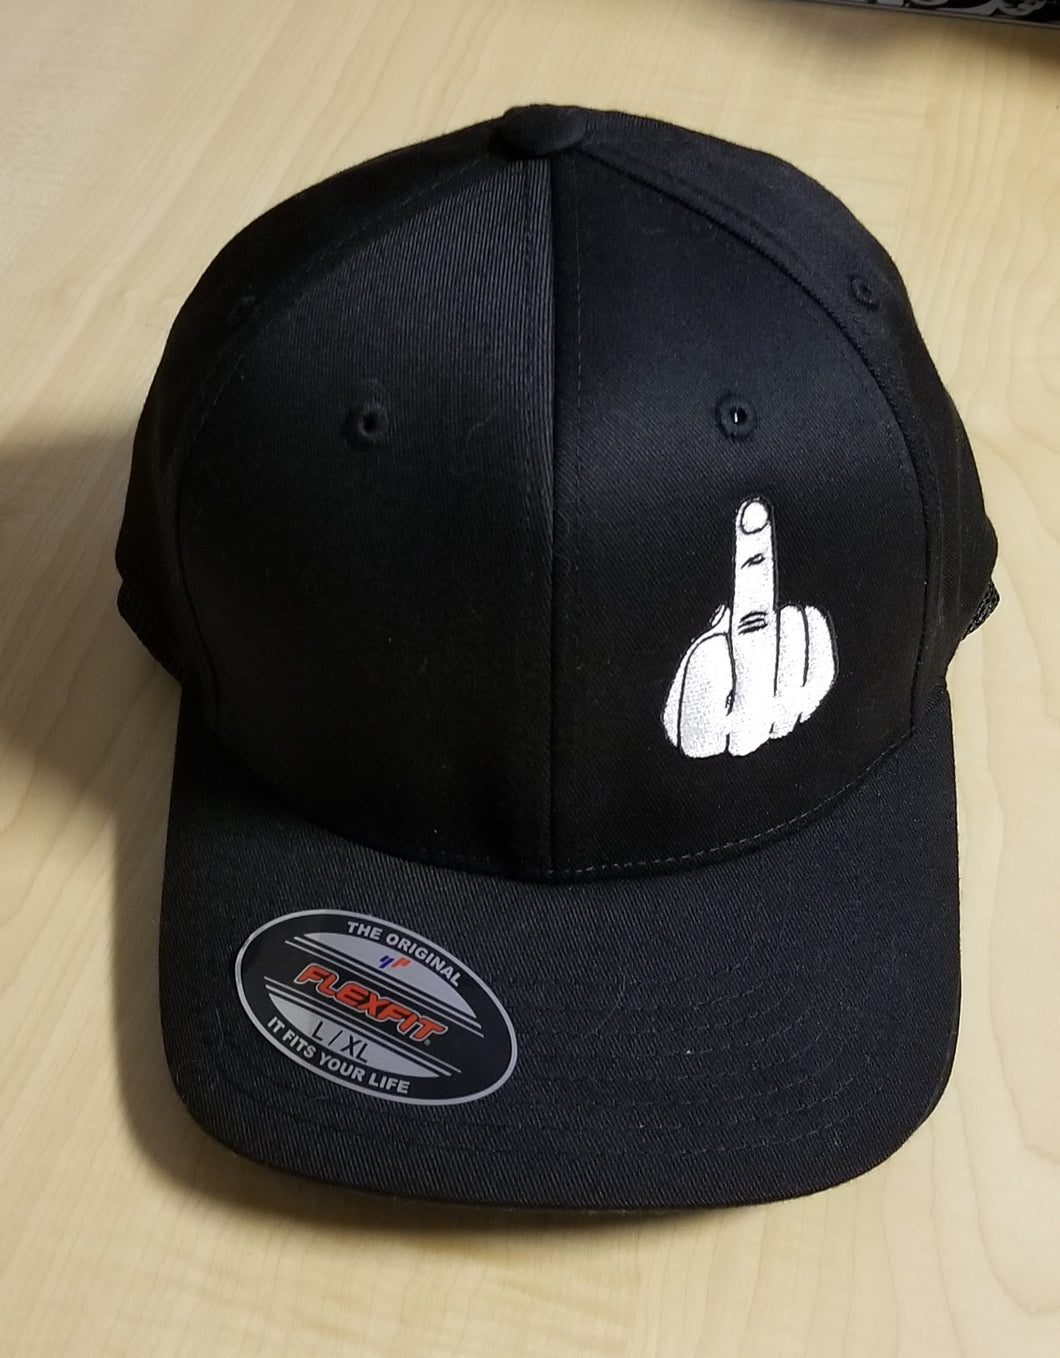 Solid Black Hat w/Middle Finger Emb.